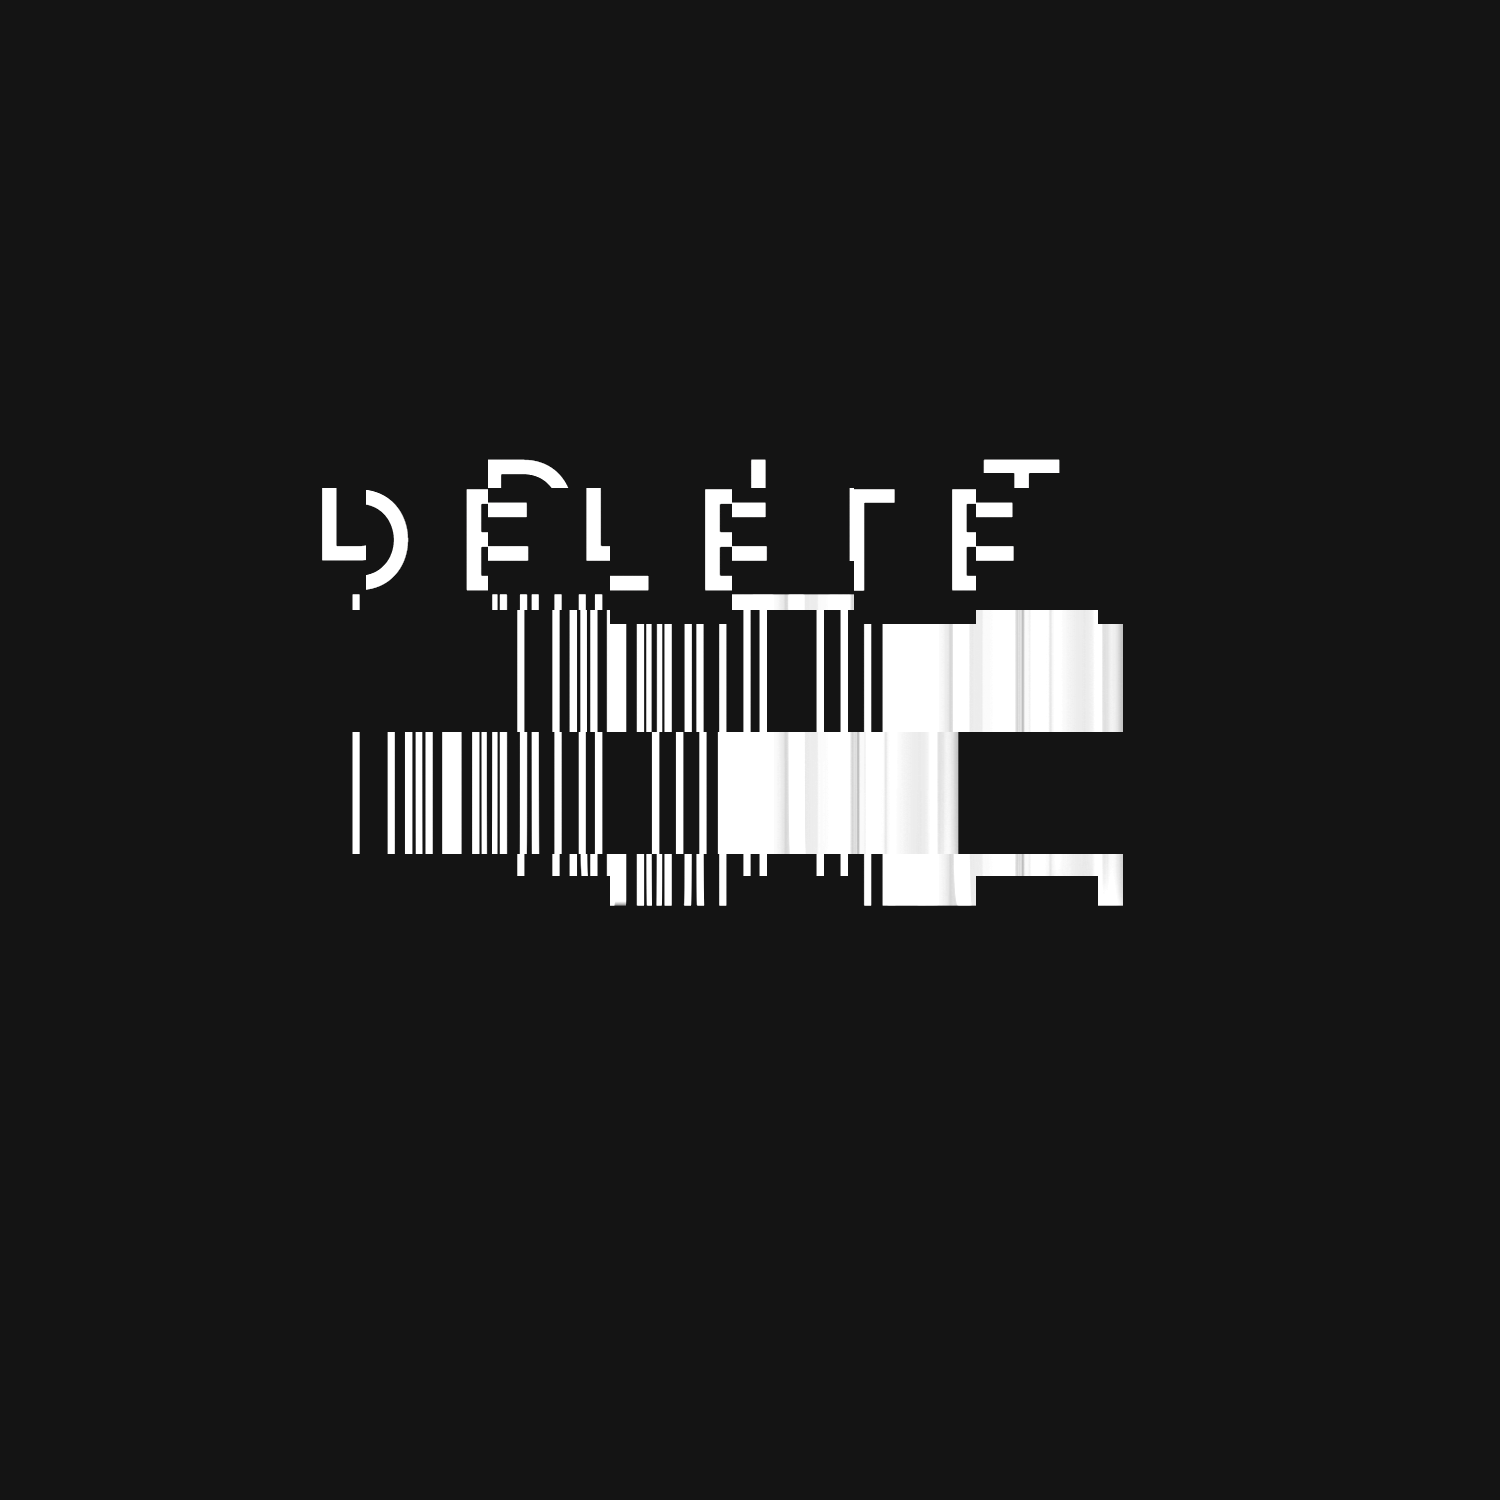 HKE - Delete